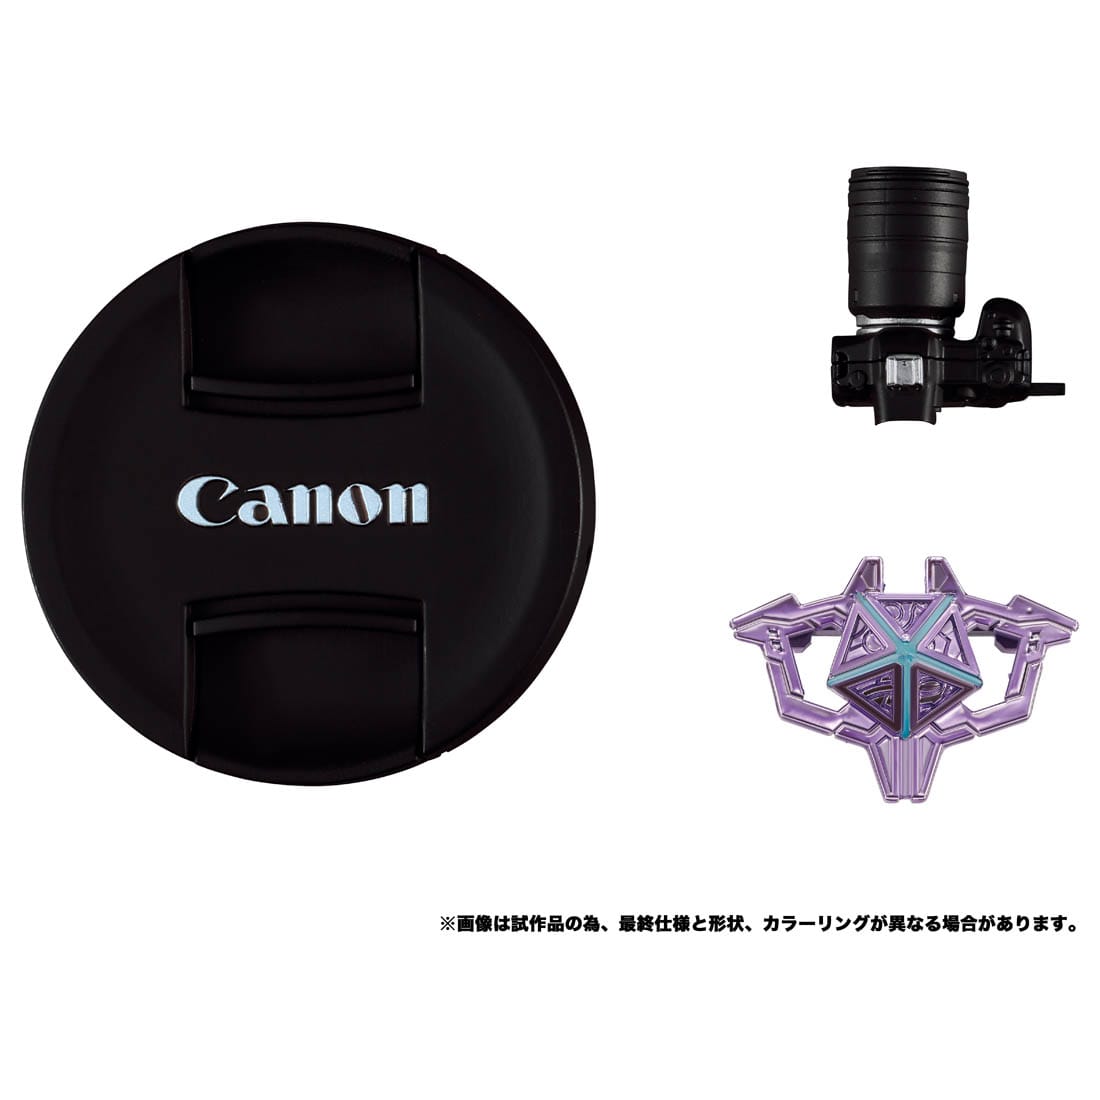 トランスフォーマー『Canon/TRANSFORMERS ネメシスプライムR5』可変可動フィギュア-006